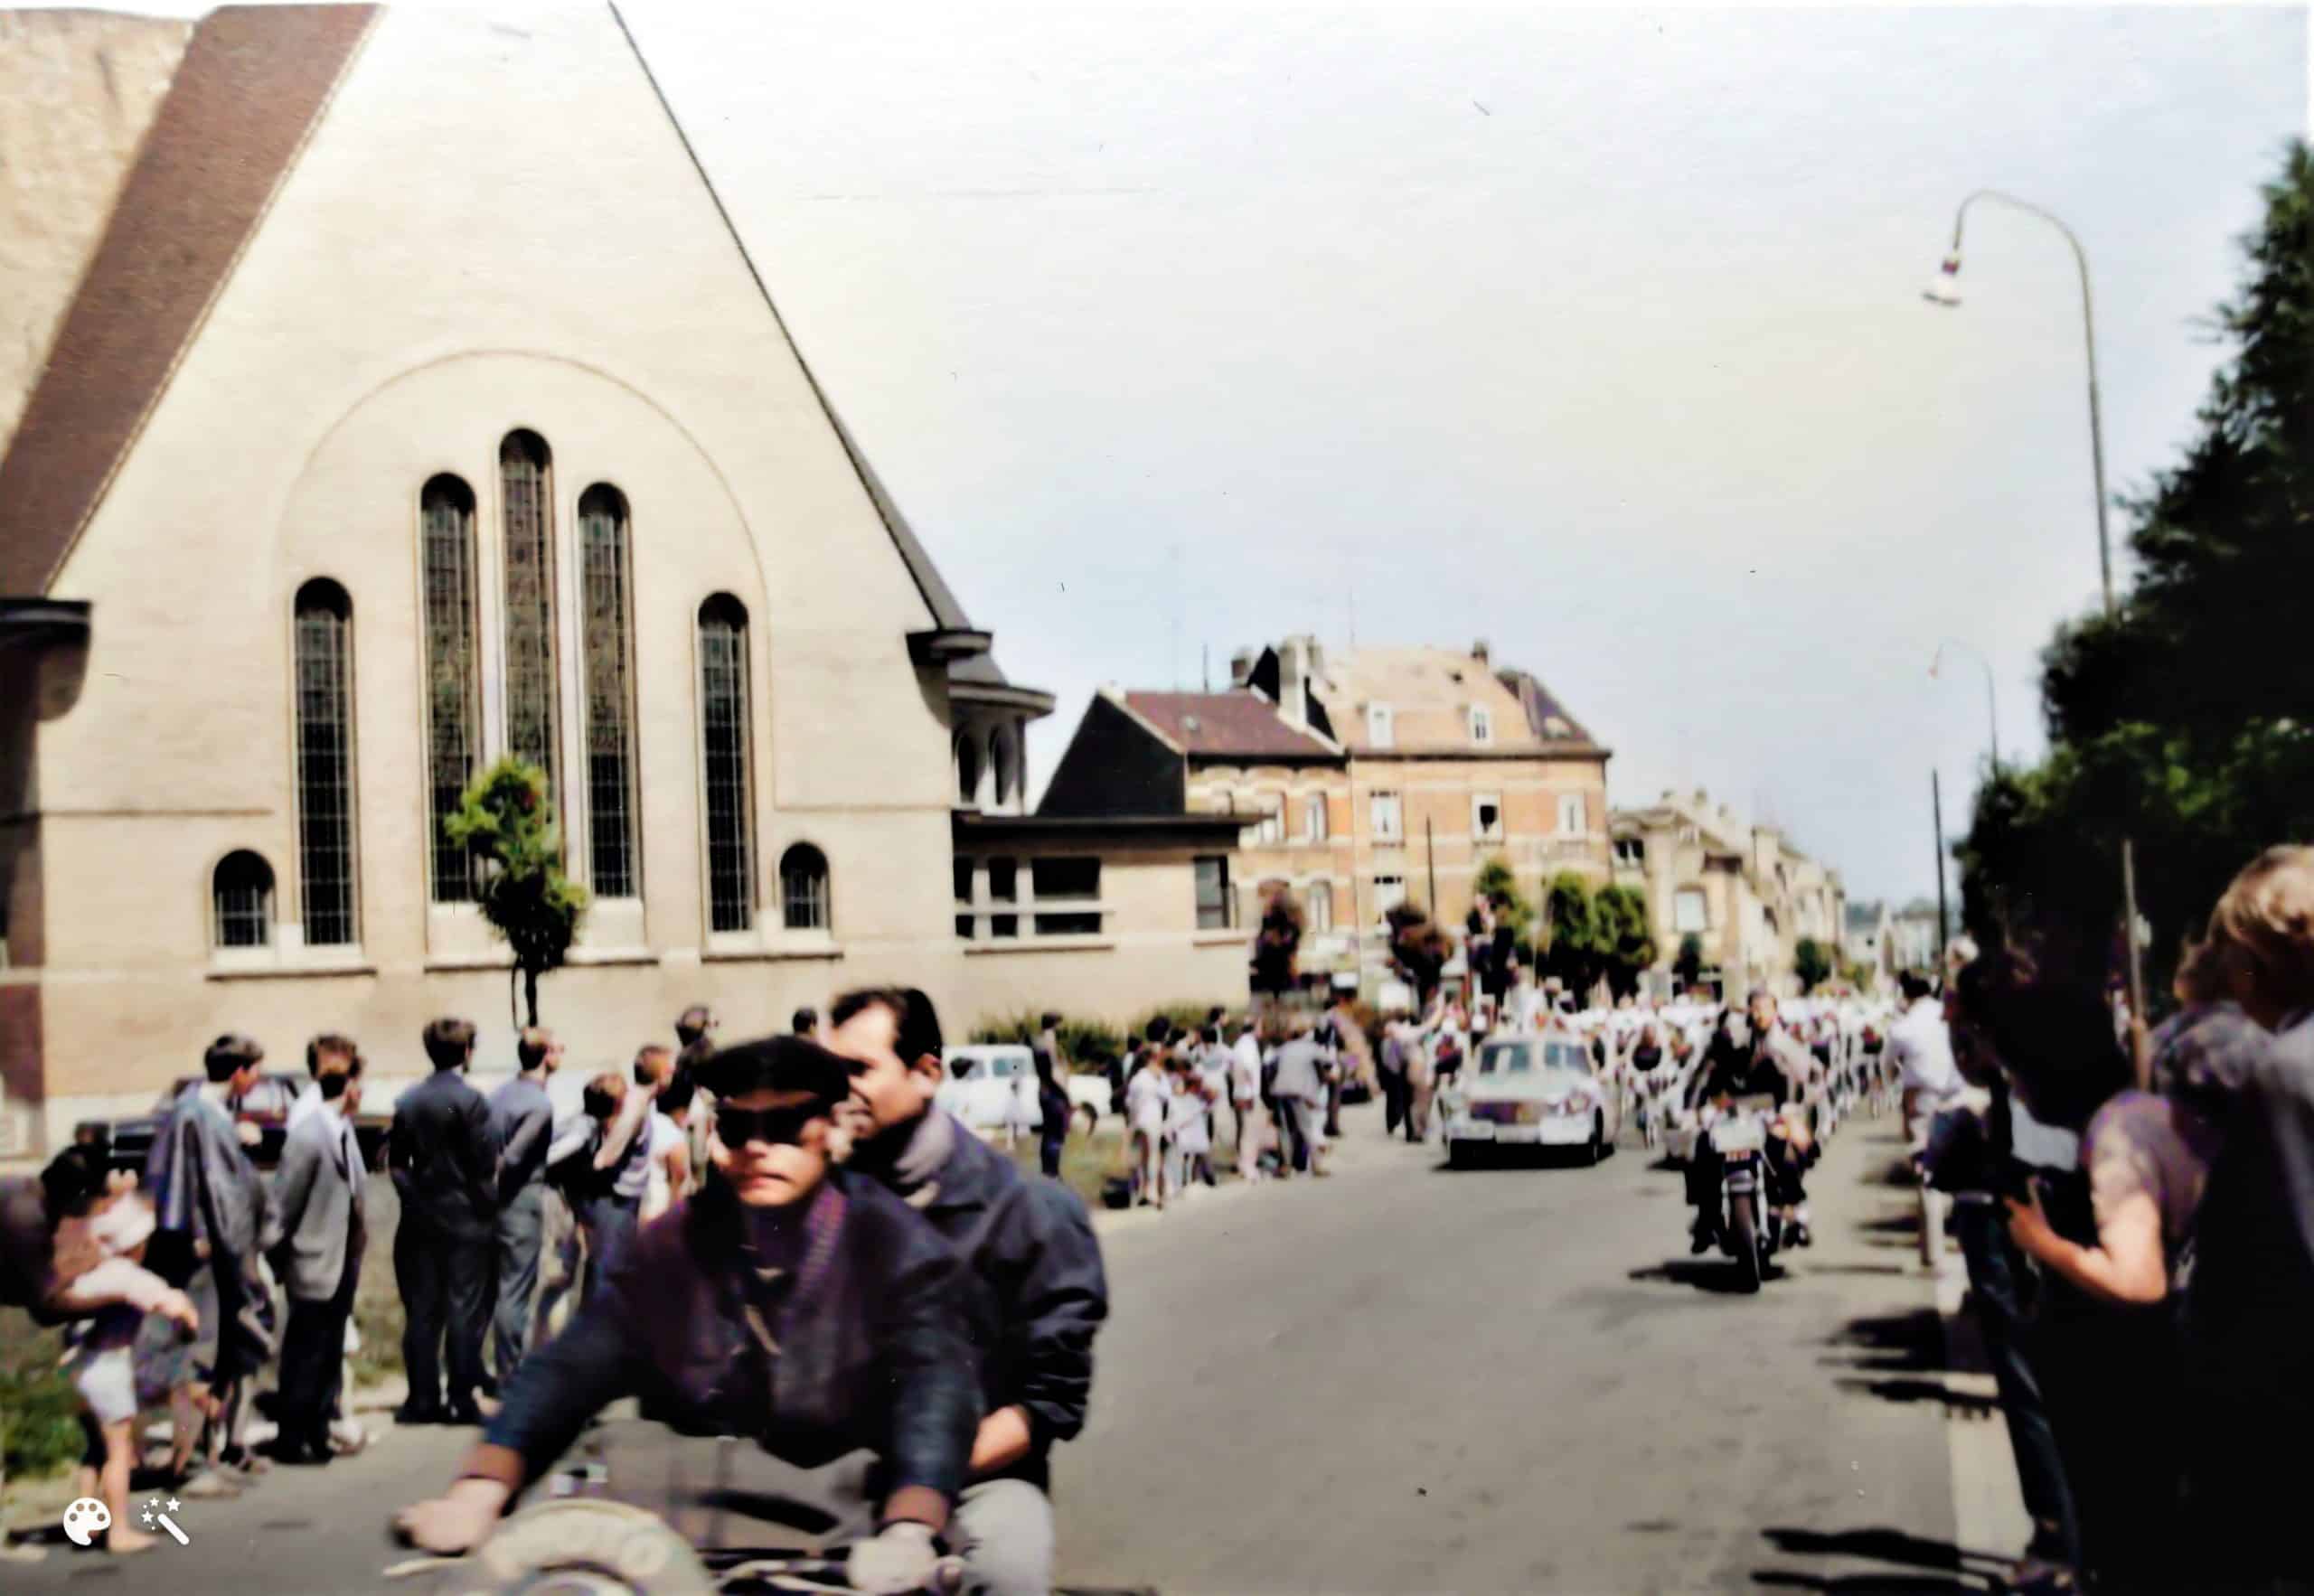 De Tour de France rijdt door Anderlecht in 1968. Foto met dank aan Christian Polfliet, ingekleurd en verbeterd door MyHeritage